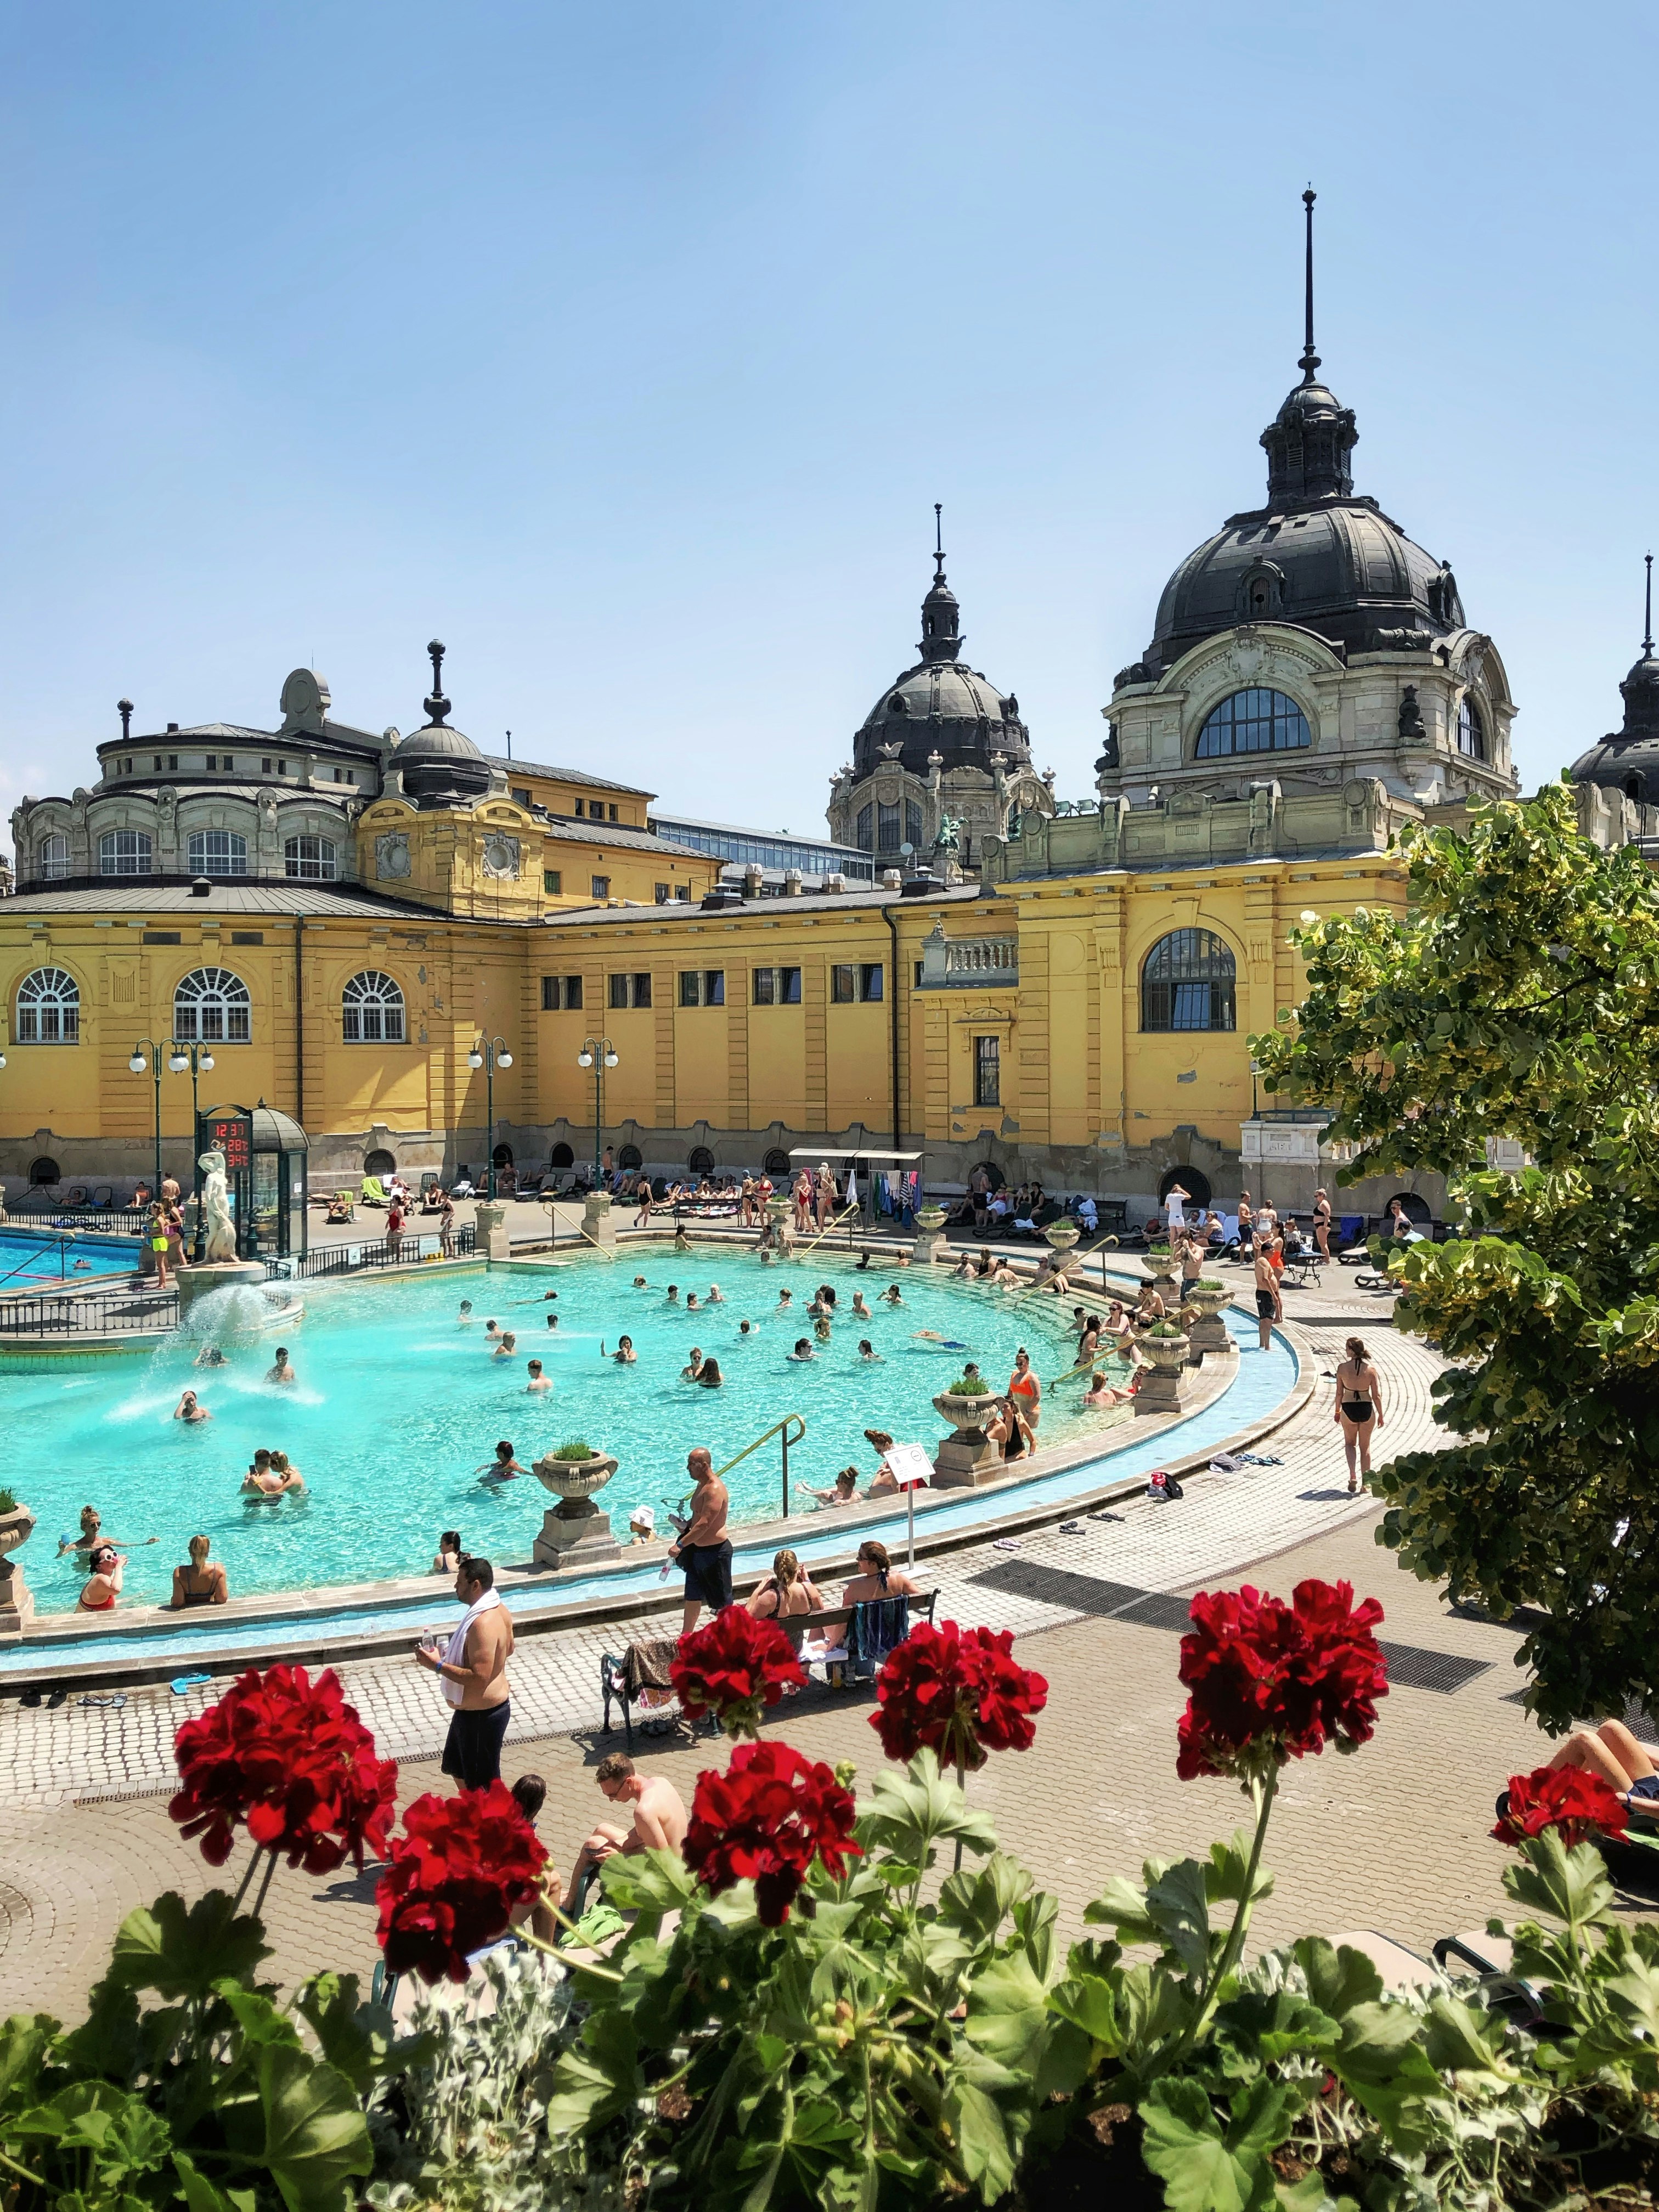 Szechenyi Thermal Bath, Budapest, Hungary
Original: https://www.dropbox.com/s/fczjyjo0pkcnwqg/Budapest9.jpg?dl=0